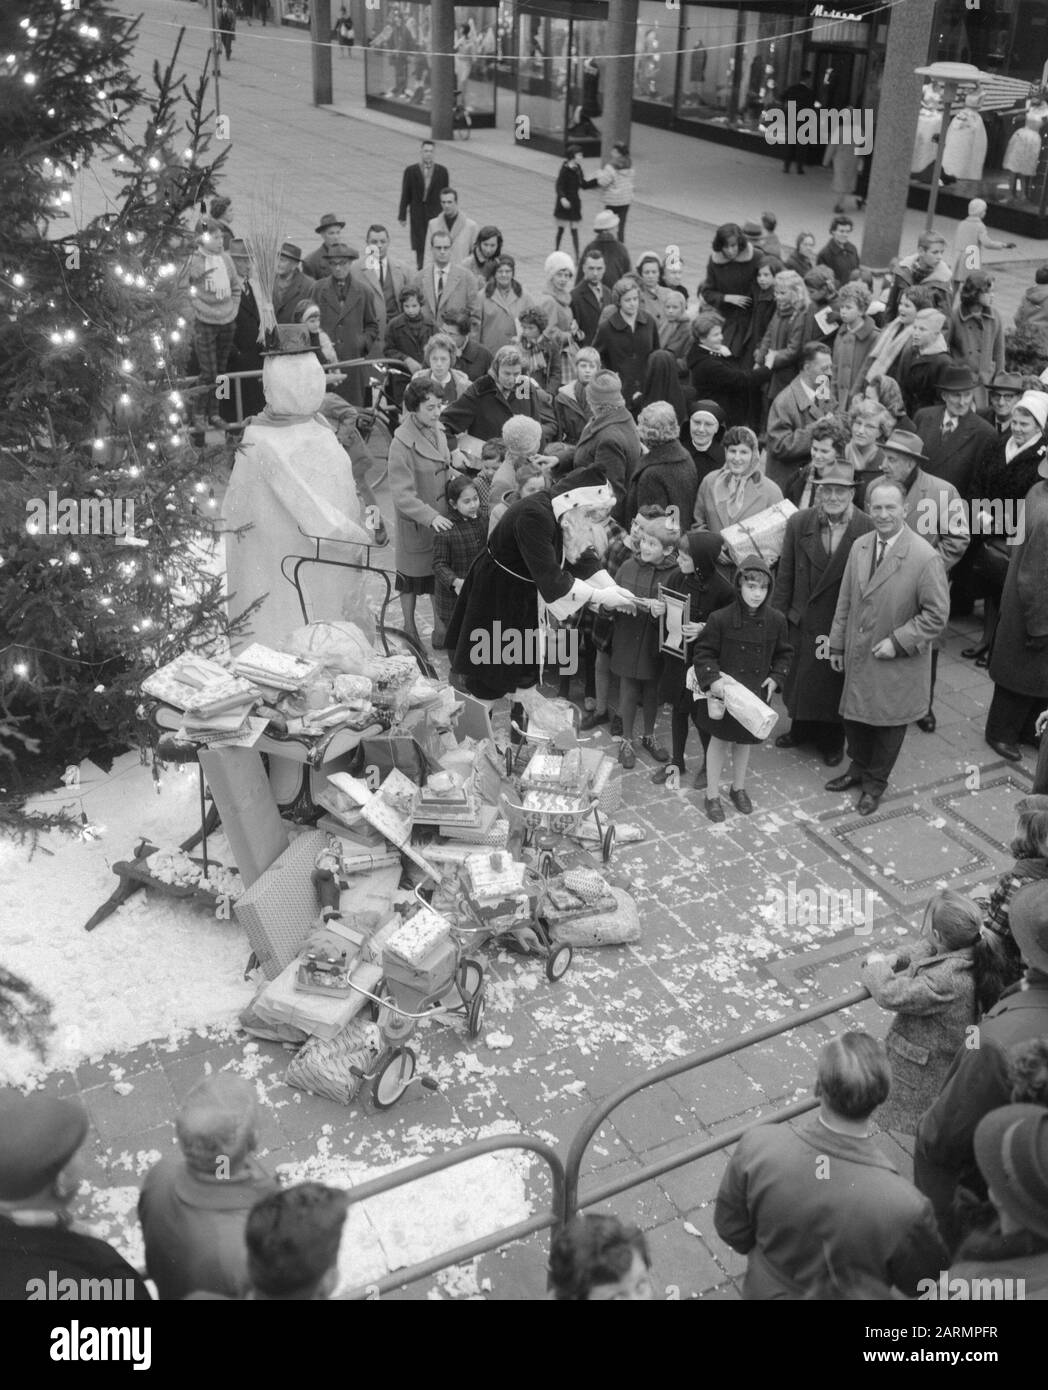 Weihnachtslieferung durch Rotterdamer an Spastikkinder. Weihnachtsmann erhält Geschenke Datum: 22. Dezember 1961 Schlüsselwörter: Weihnachtsmann, Kinder, Quittungen, Spastik Stockfoto